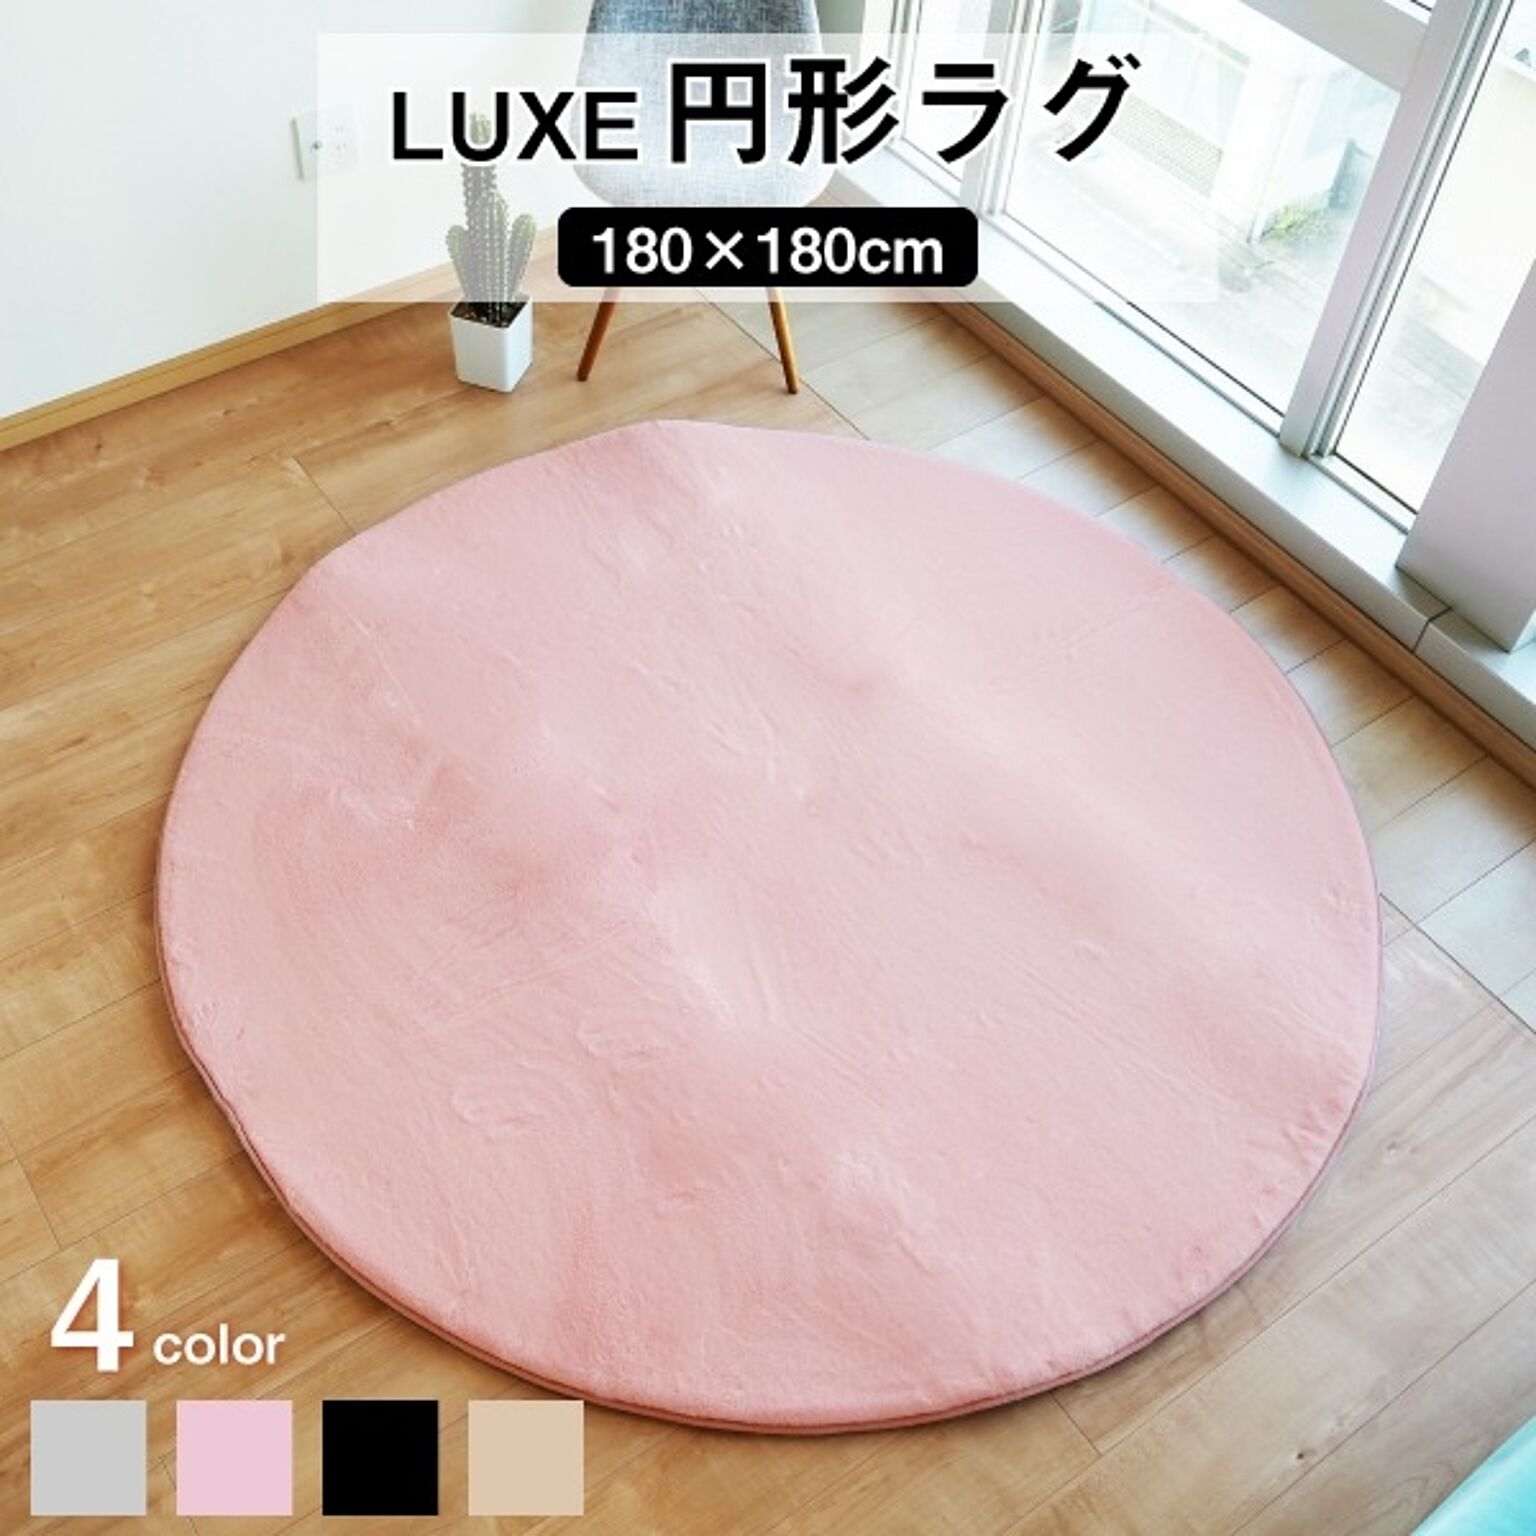 ラグマット 絨毯 約180cm 円形 ピンク 滑り止め加工 高密度 ファータッチラグ LUXE リビング ダイニング プレゼント【代引不可】